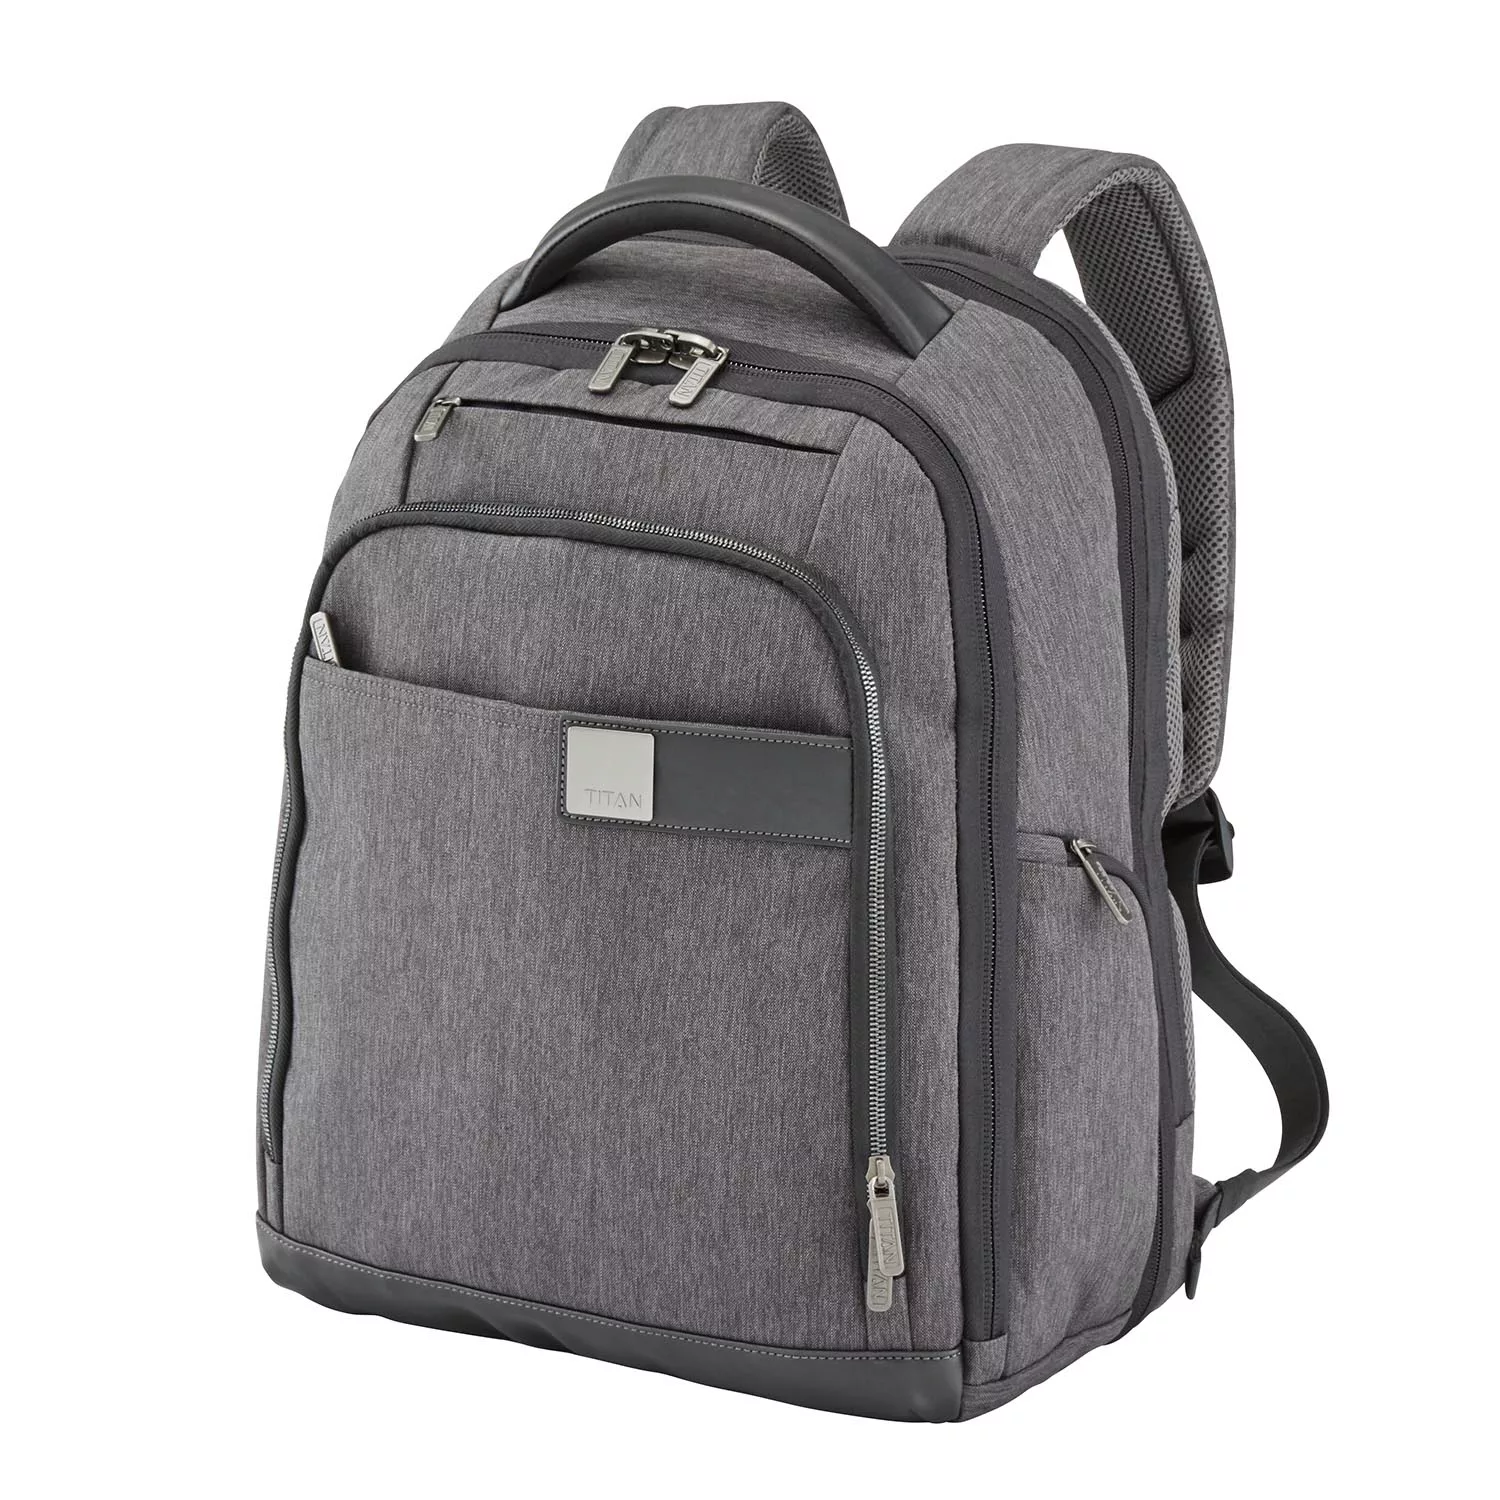 Titan - Power Pack Rucksack mit Laptopfach 15,6 Zoll schwarz günstig online kaufen